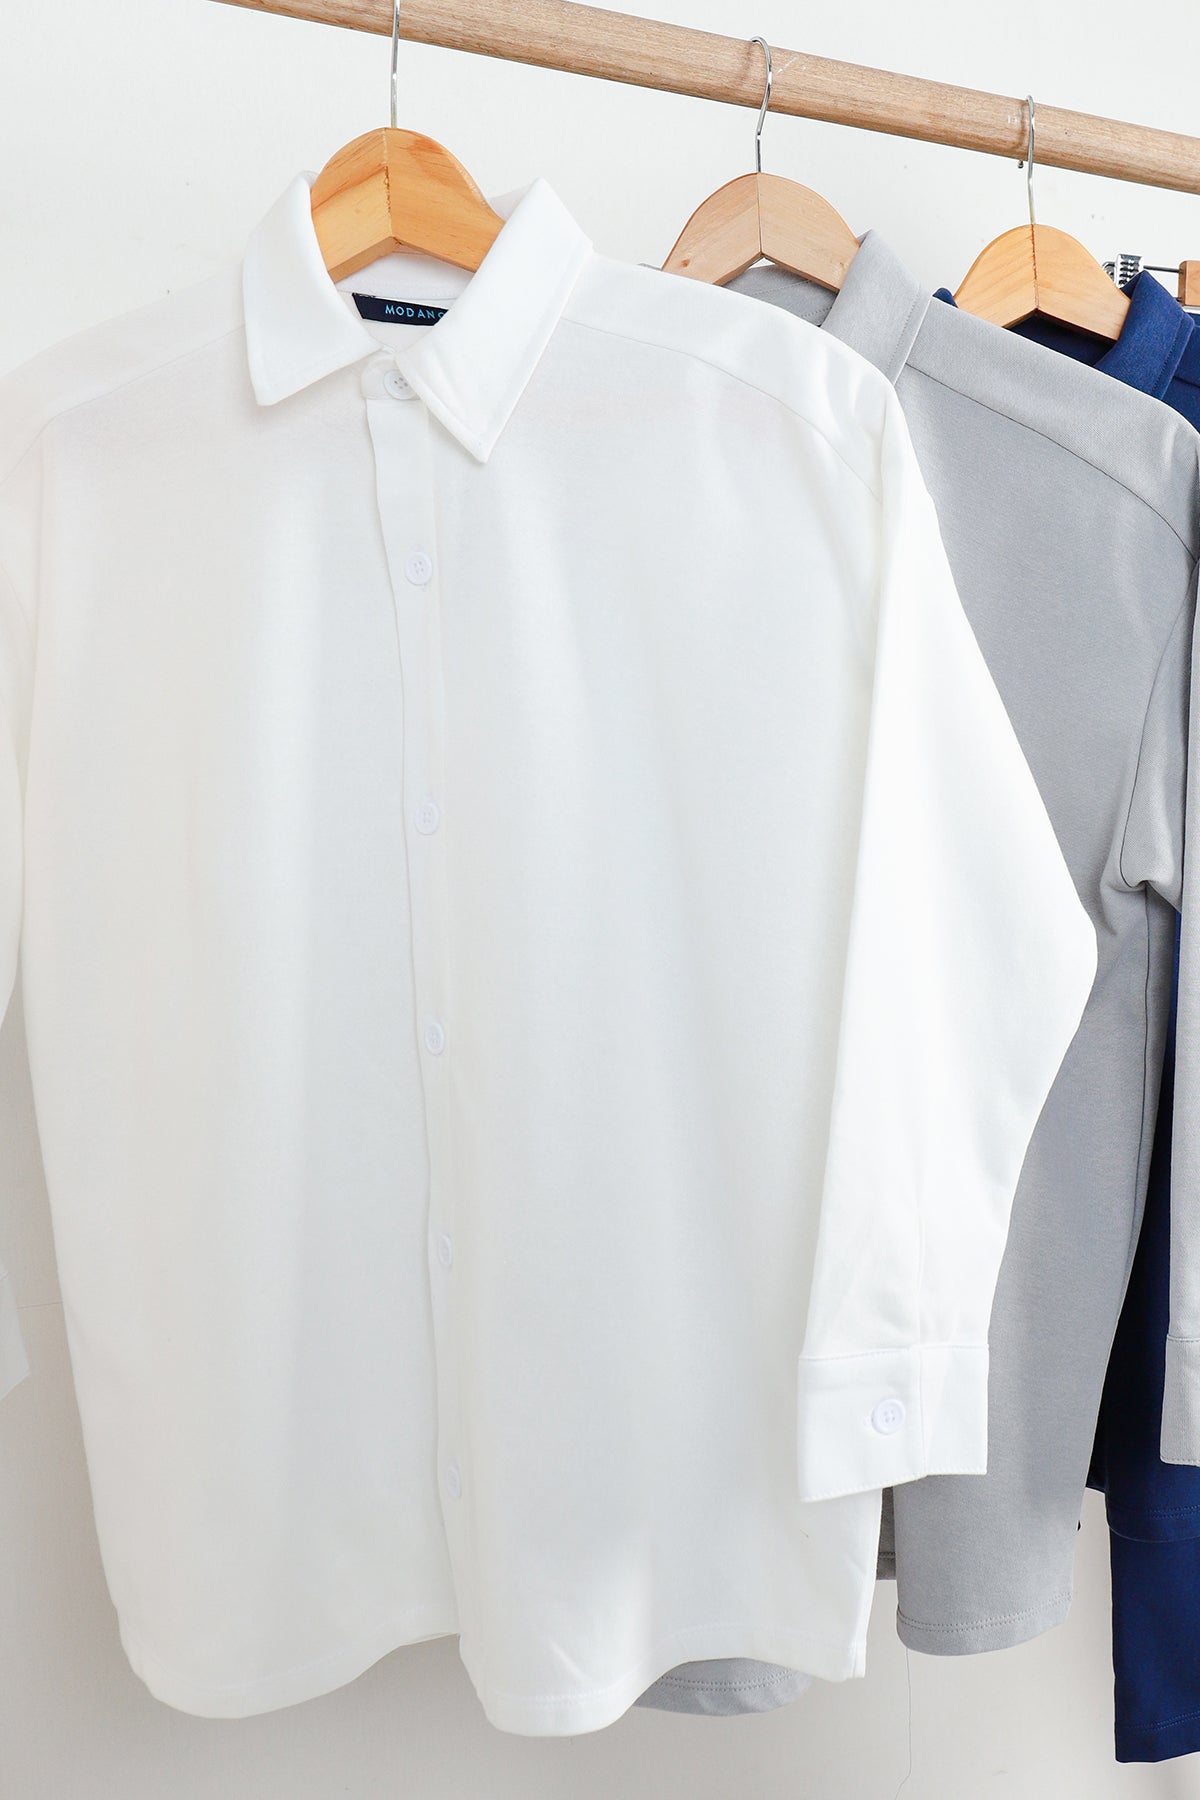 Modano Women's Long Sleeve Casual Shirt